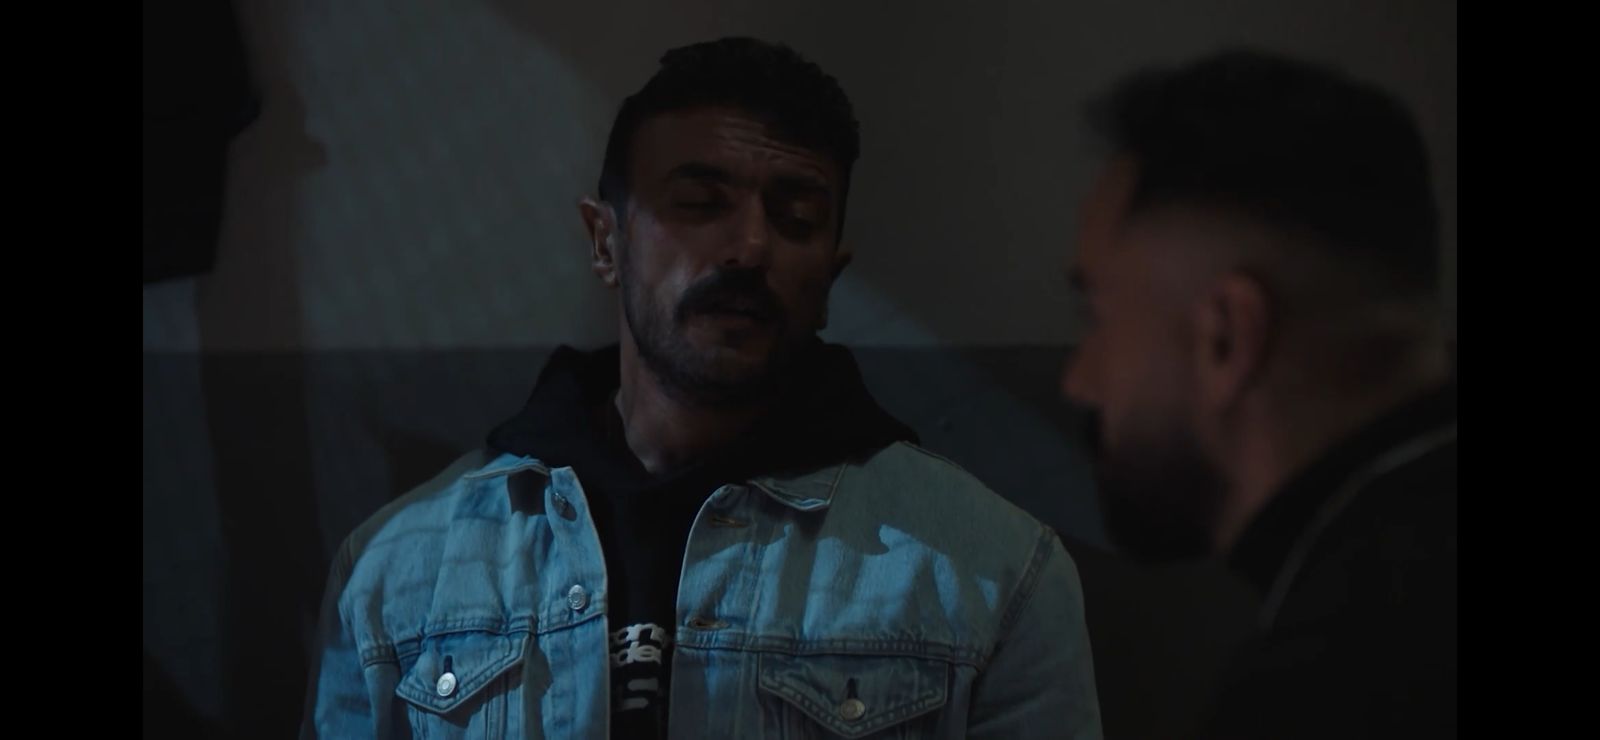 مسلسل حق عرب الحلقة 4  وليد فواز يحرض شخص لقتل العوضي داخل السجن (4)